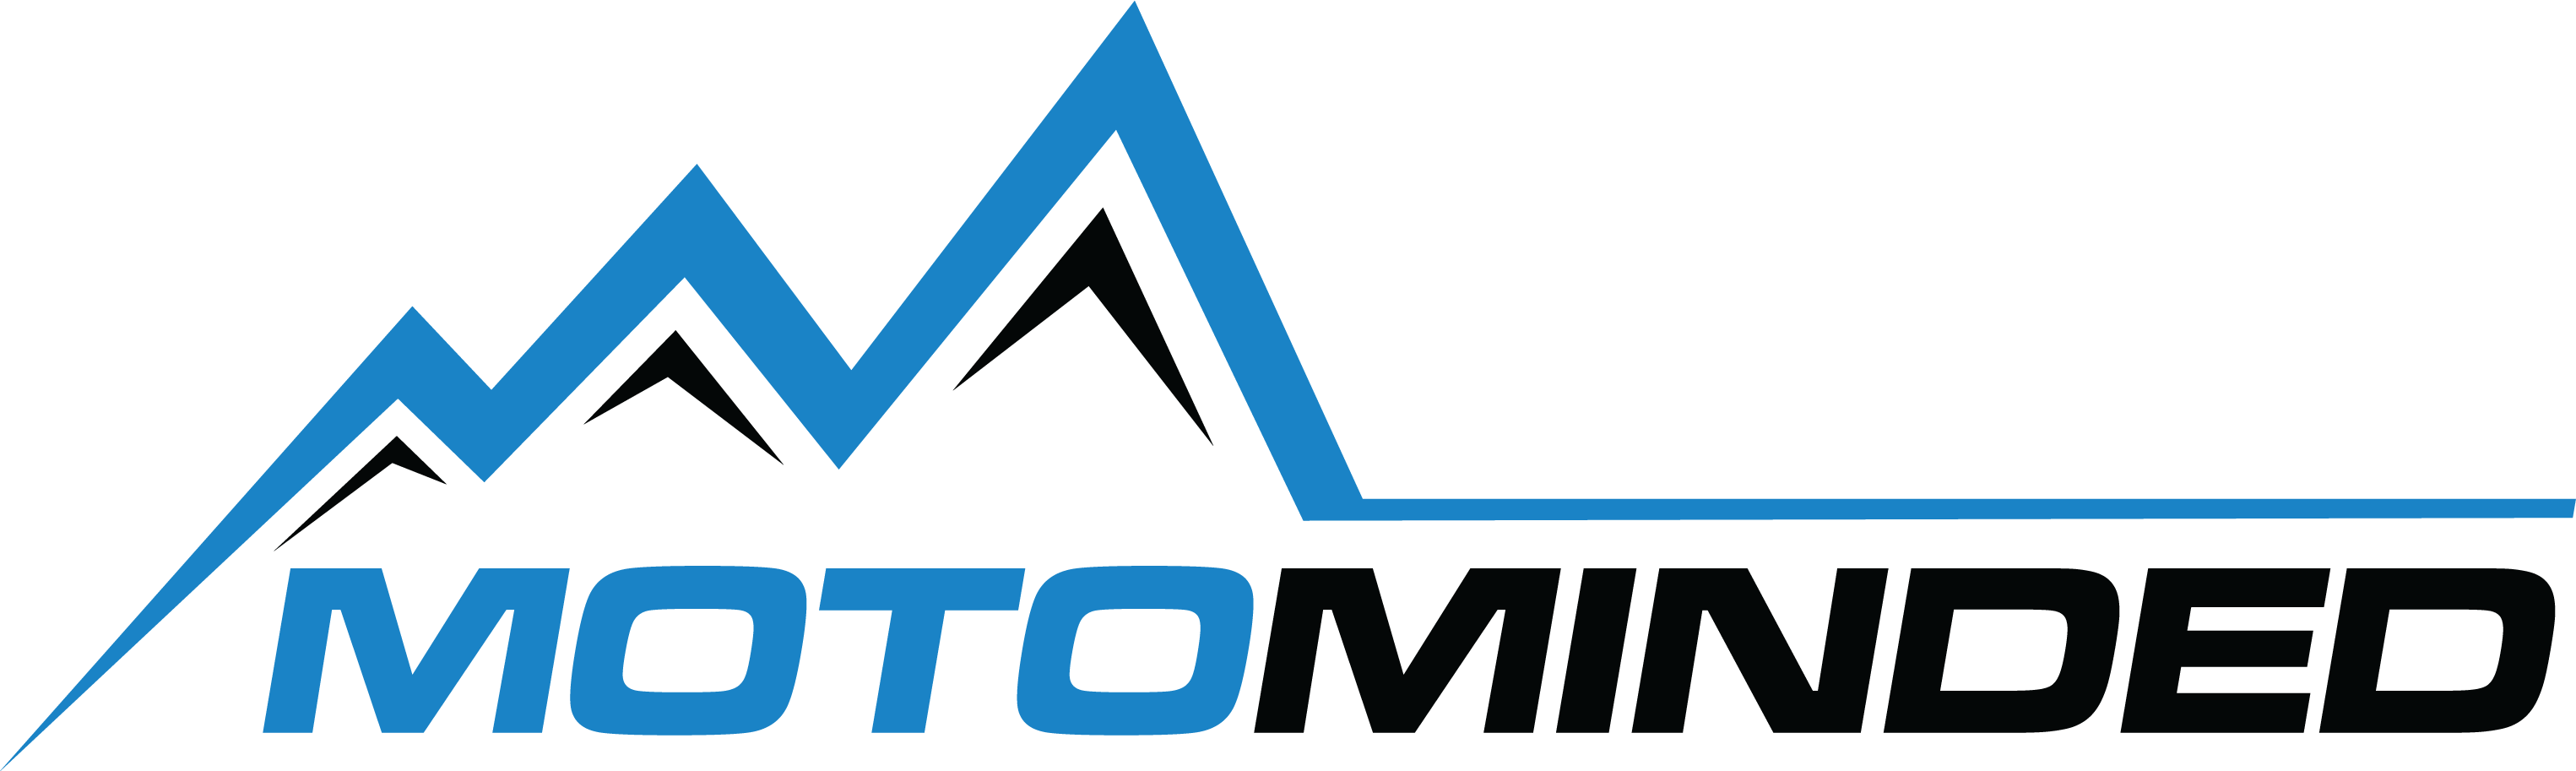 MotoMinded logo